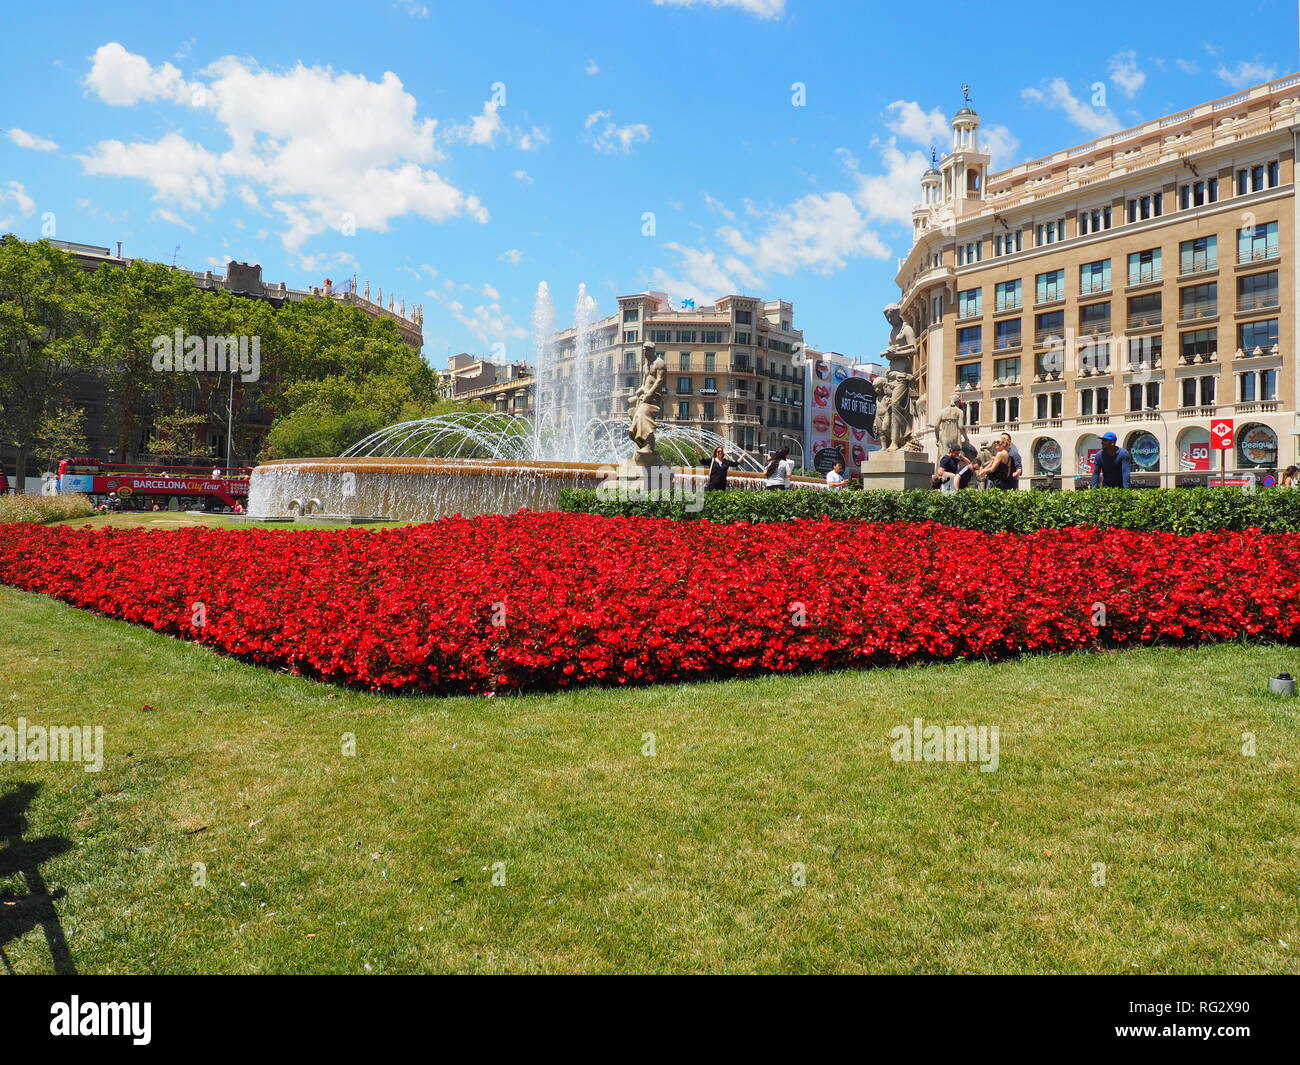 Blumen und Brunnen im Plaza Catalunya - Barcelona - Spanien Stockfoto